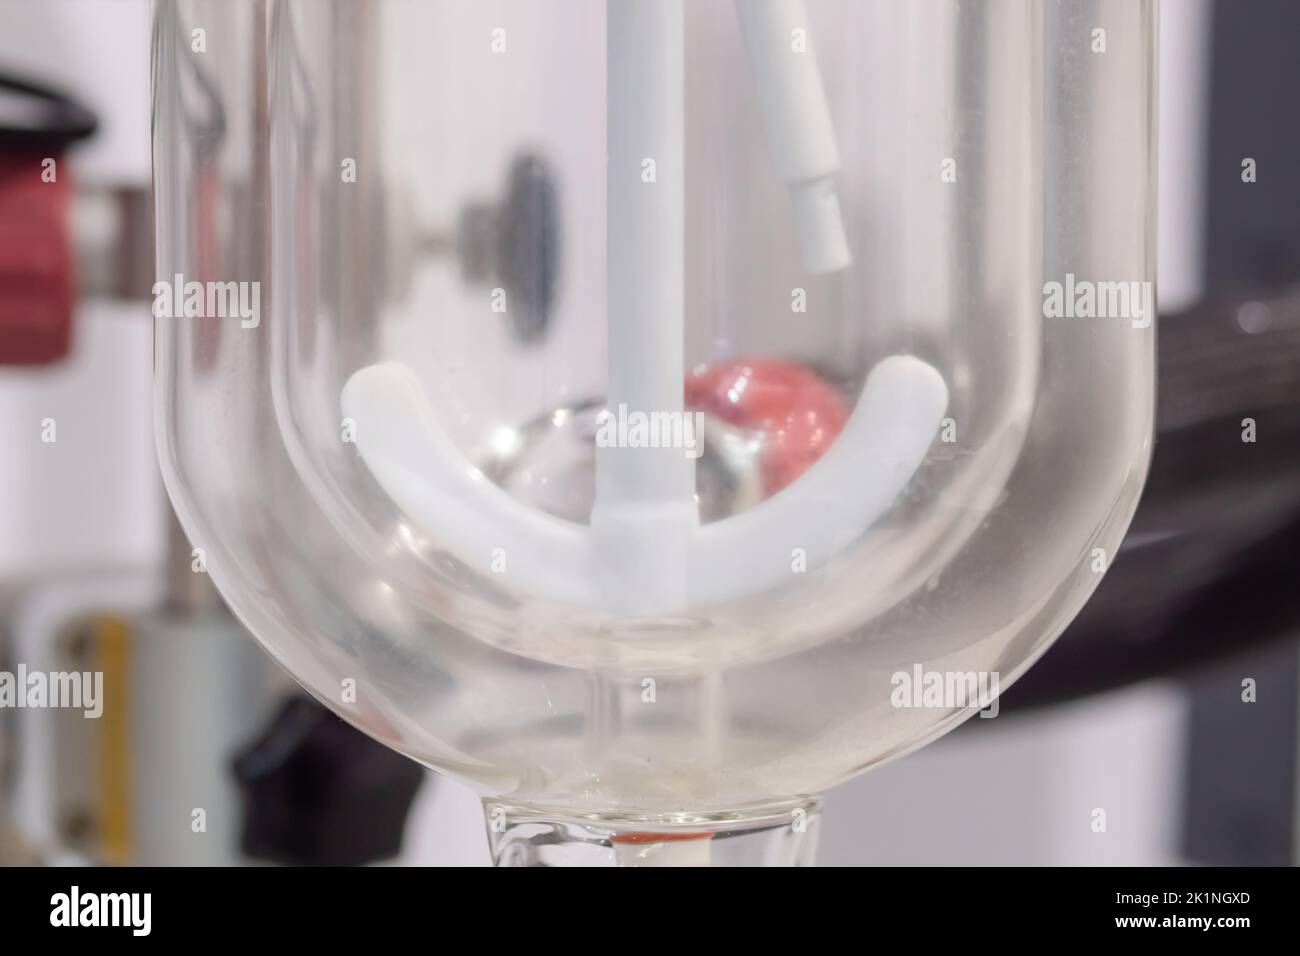 Digitaler Rührer zum Mischen von Flüssigkeiten - Laborgeräte - Nahaufnahme Stockfoto